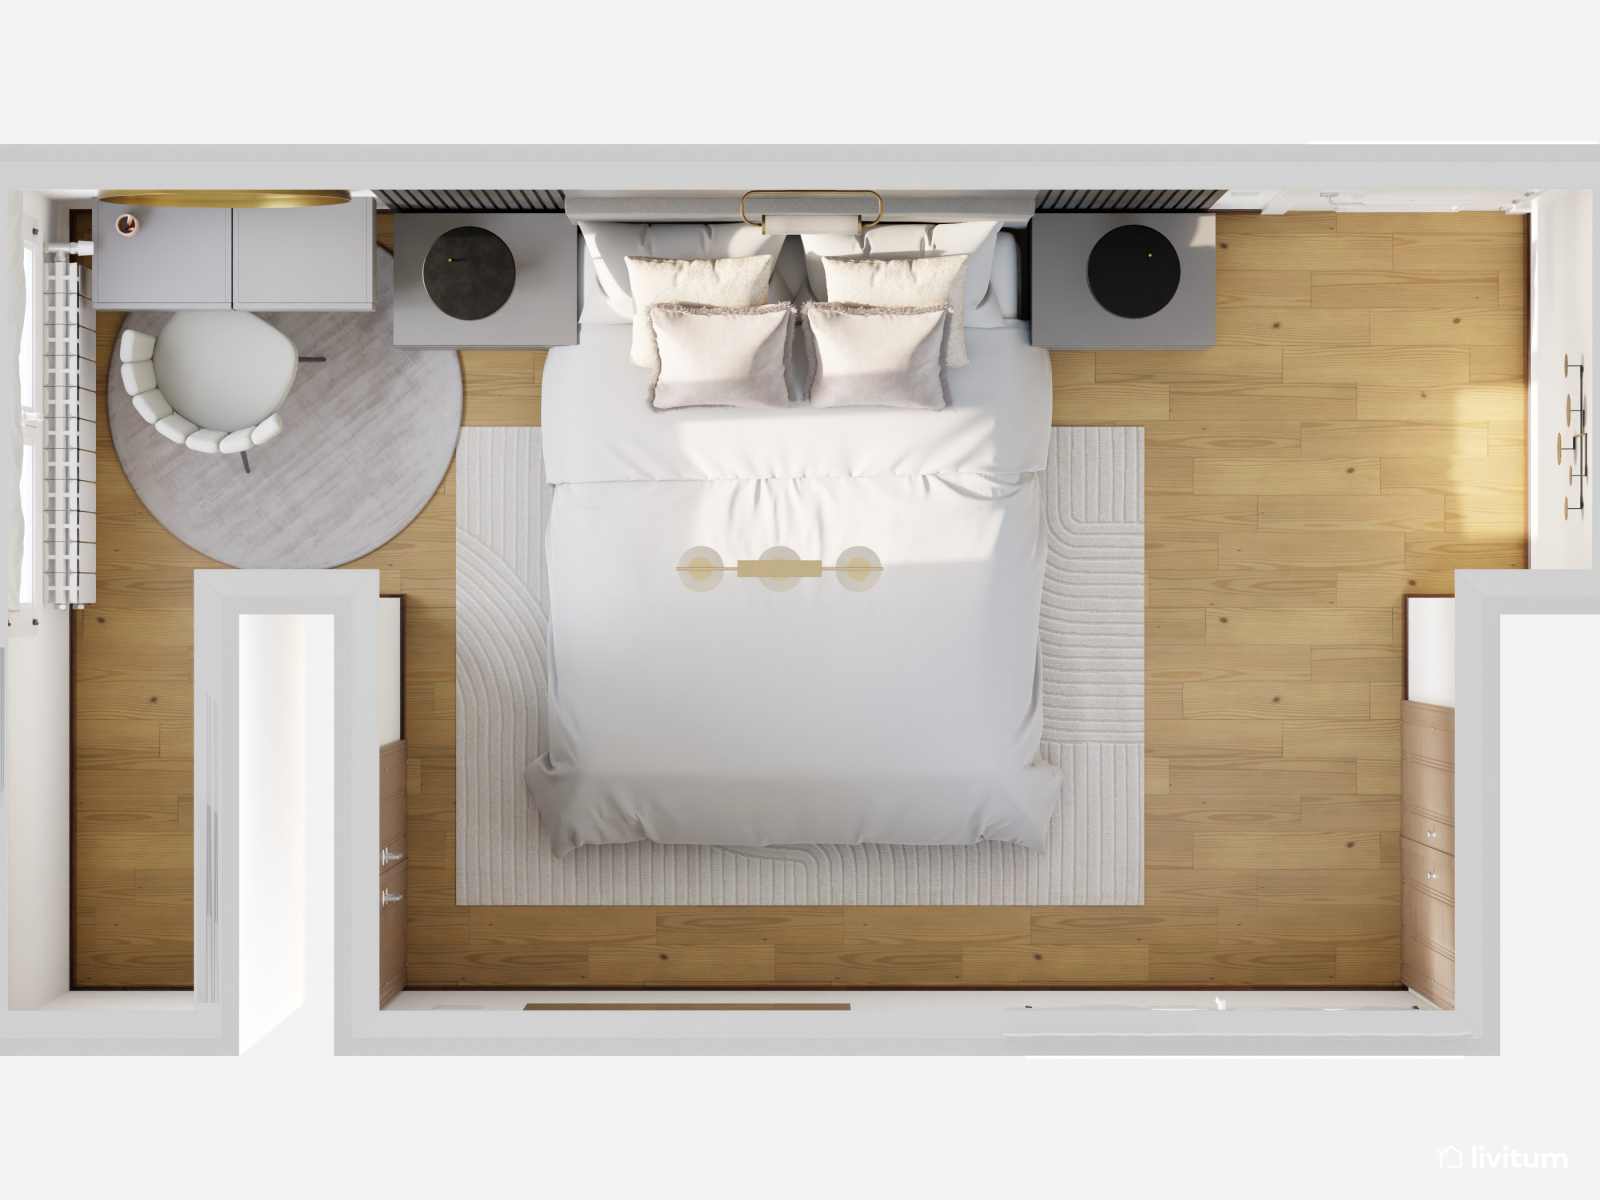 Elegante dormitorio en negro con listones de madera 